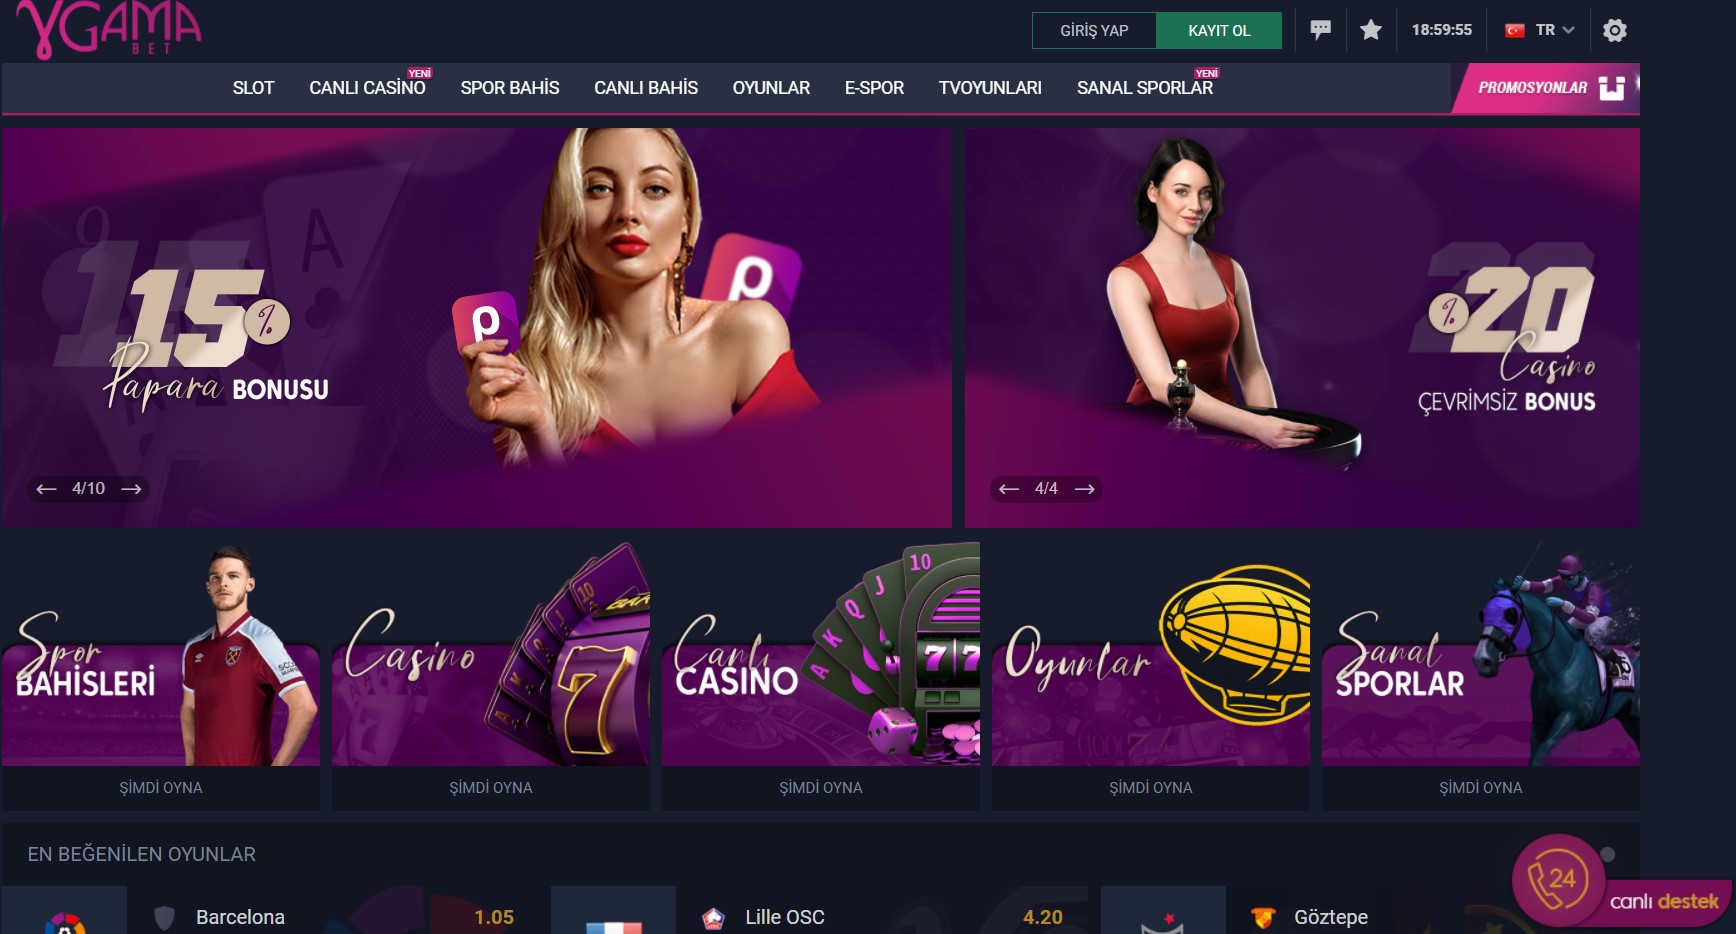 Gamabet casino oyunları yüksek kazanç sağlar